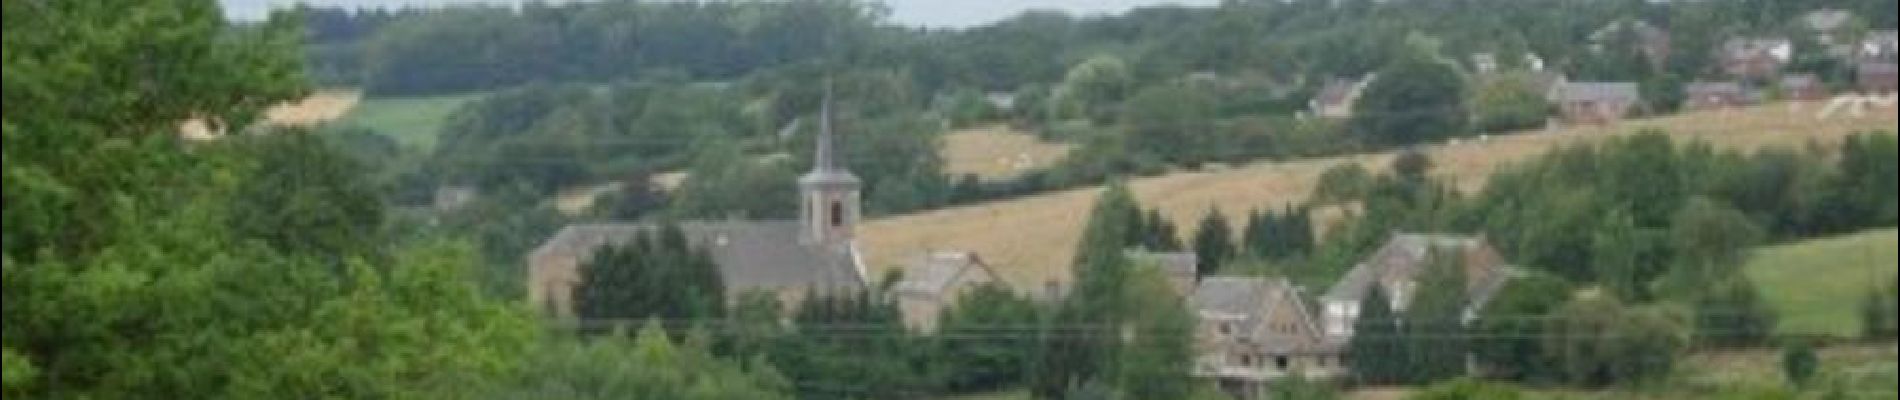 Point d'intérêt Andenne - Eglise Saint-Pierre de Ville-en-Waret - Photo